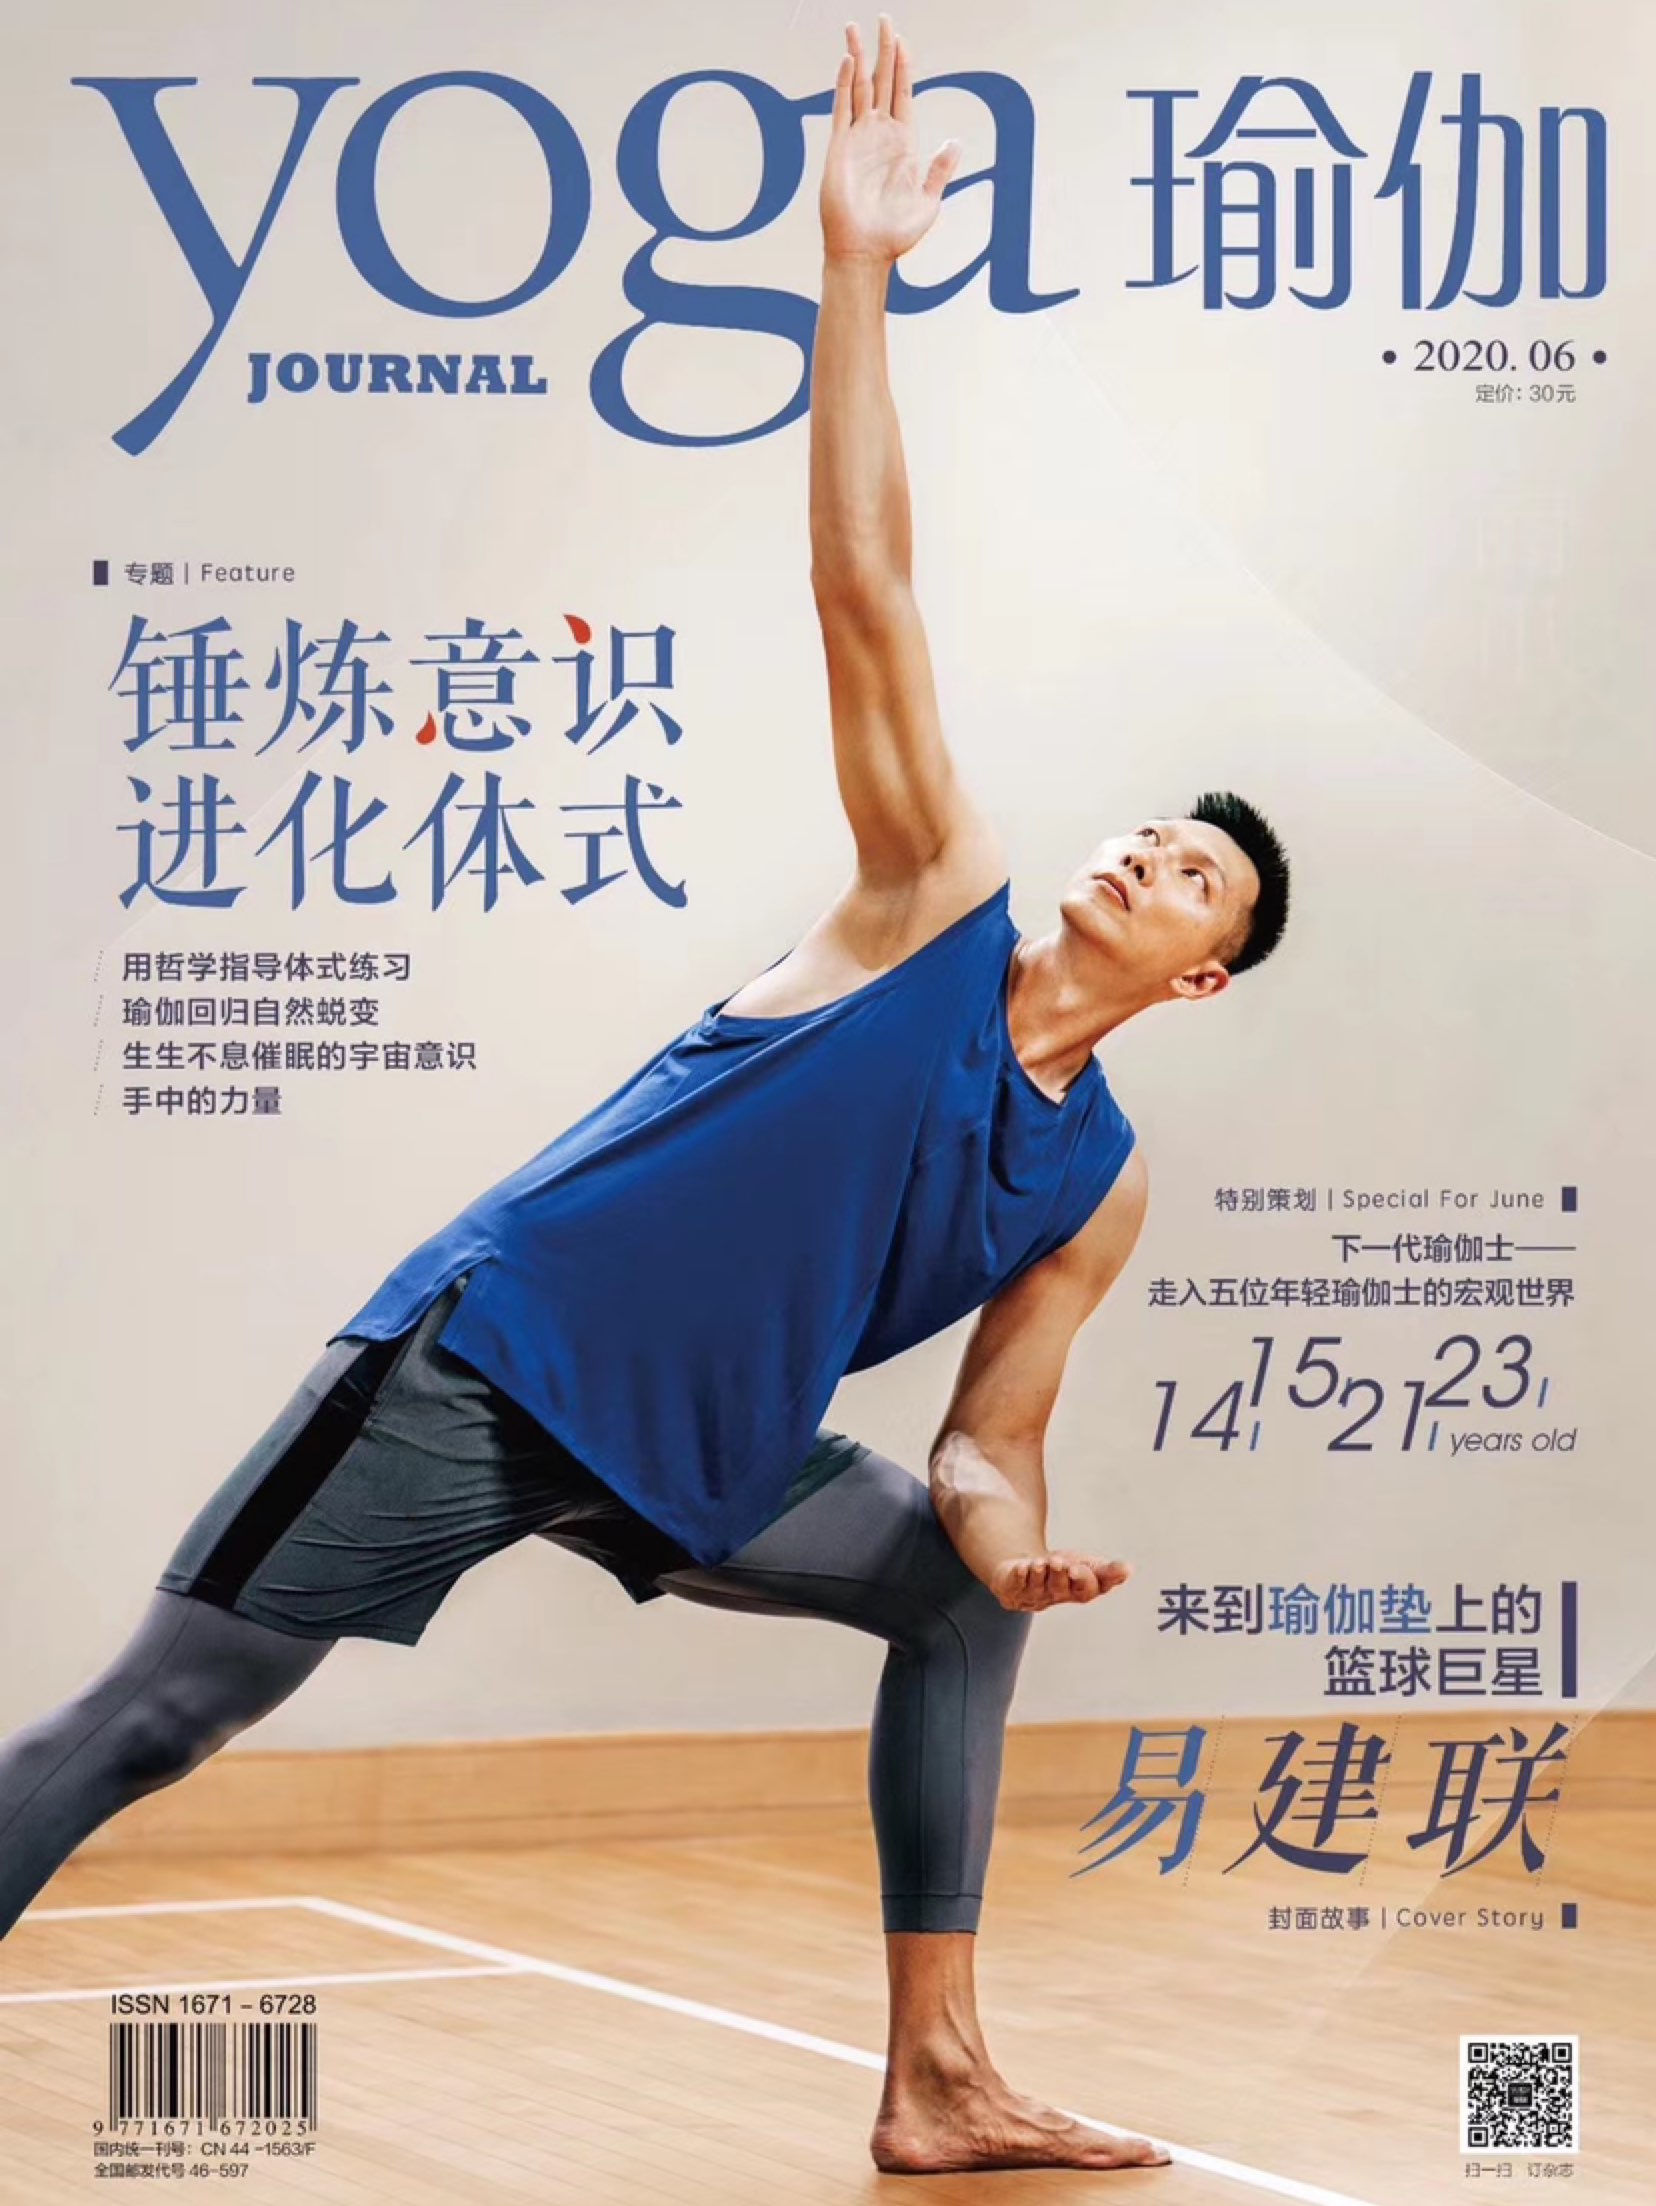 运动员选择瑜伽来提高身体表现力,易建联为《瑜伽》杂志拍摄封面有不